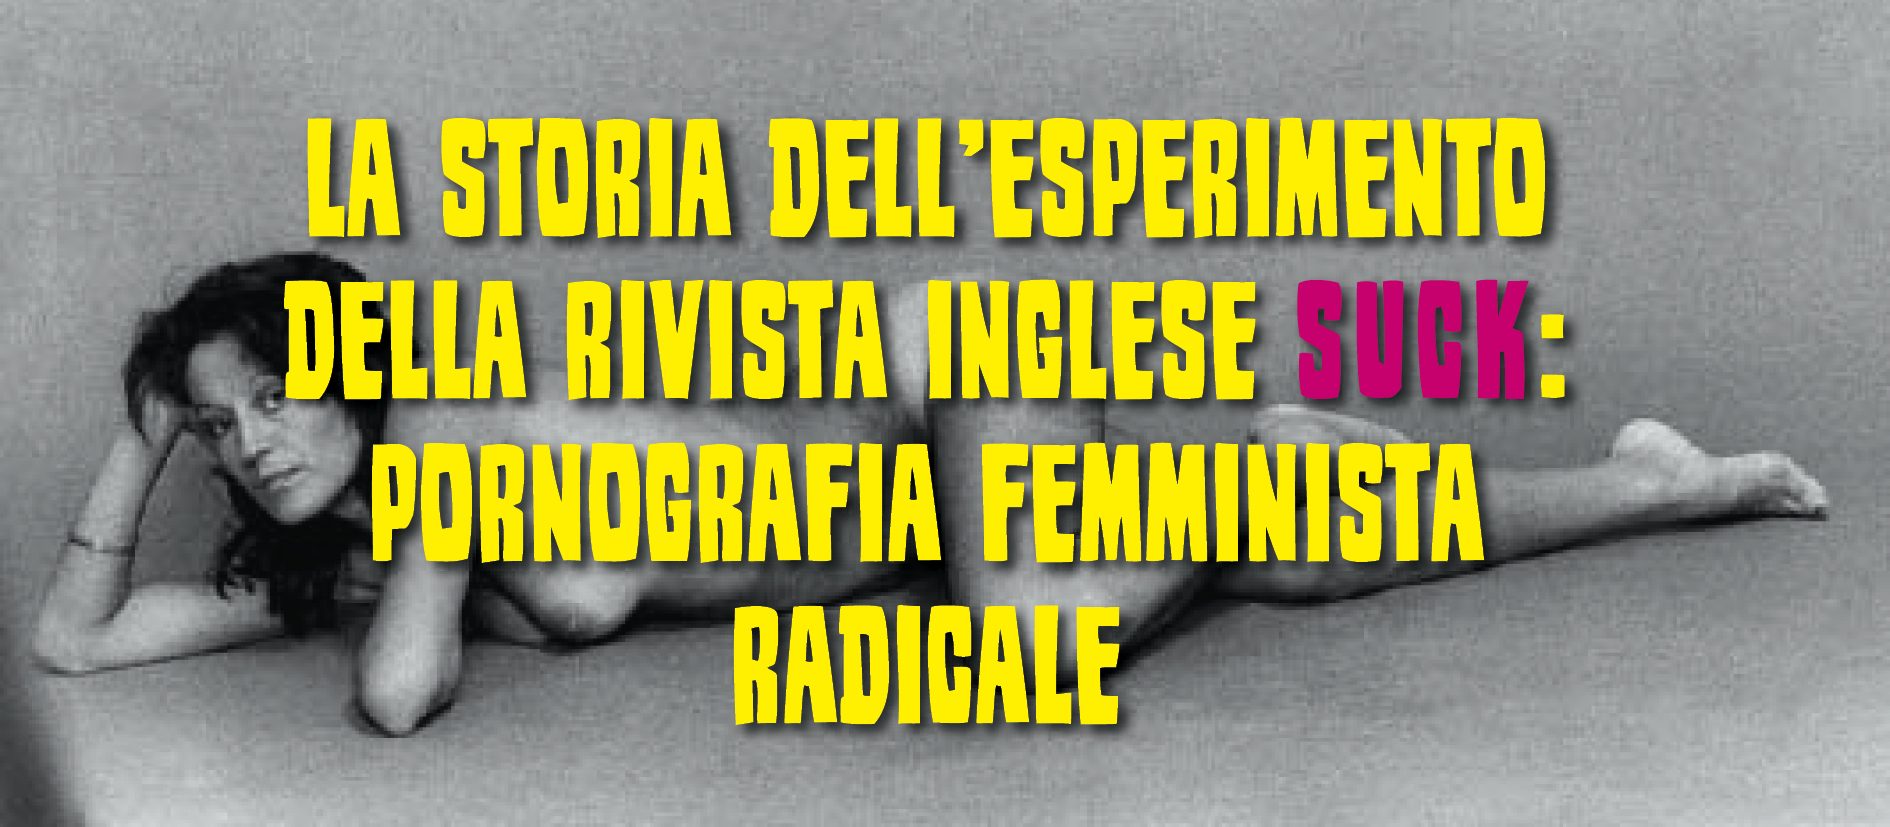 La storia dellesperimento della rivista Suck sulla pornografia femminista radicale foto